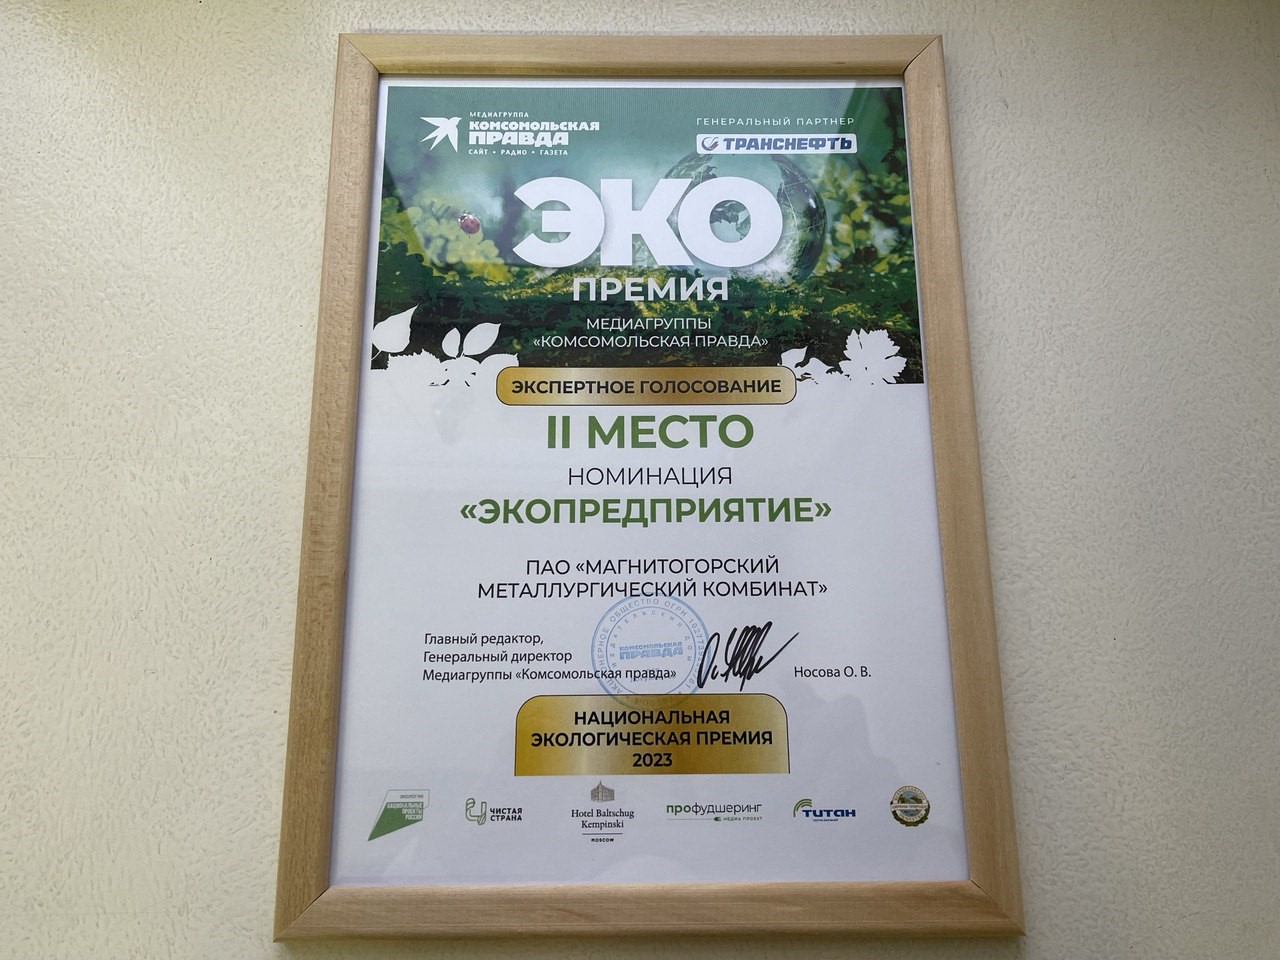 ММК — лауреат Национальной экологической премии «Комсомольской правды» 